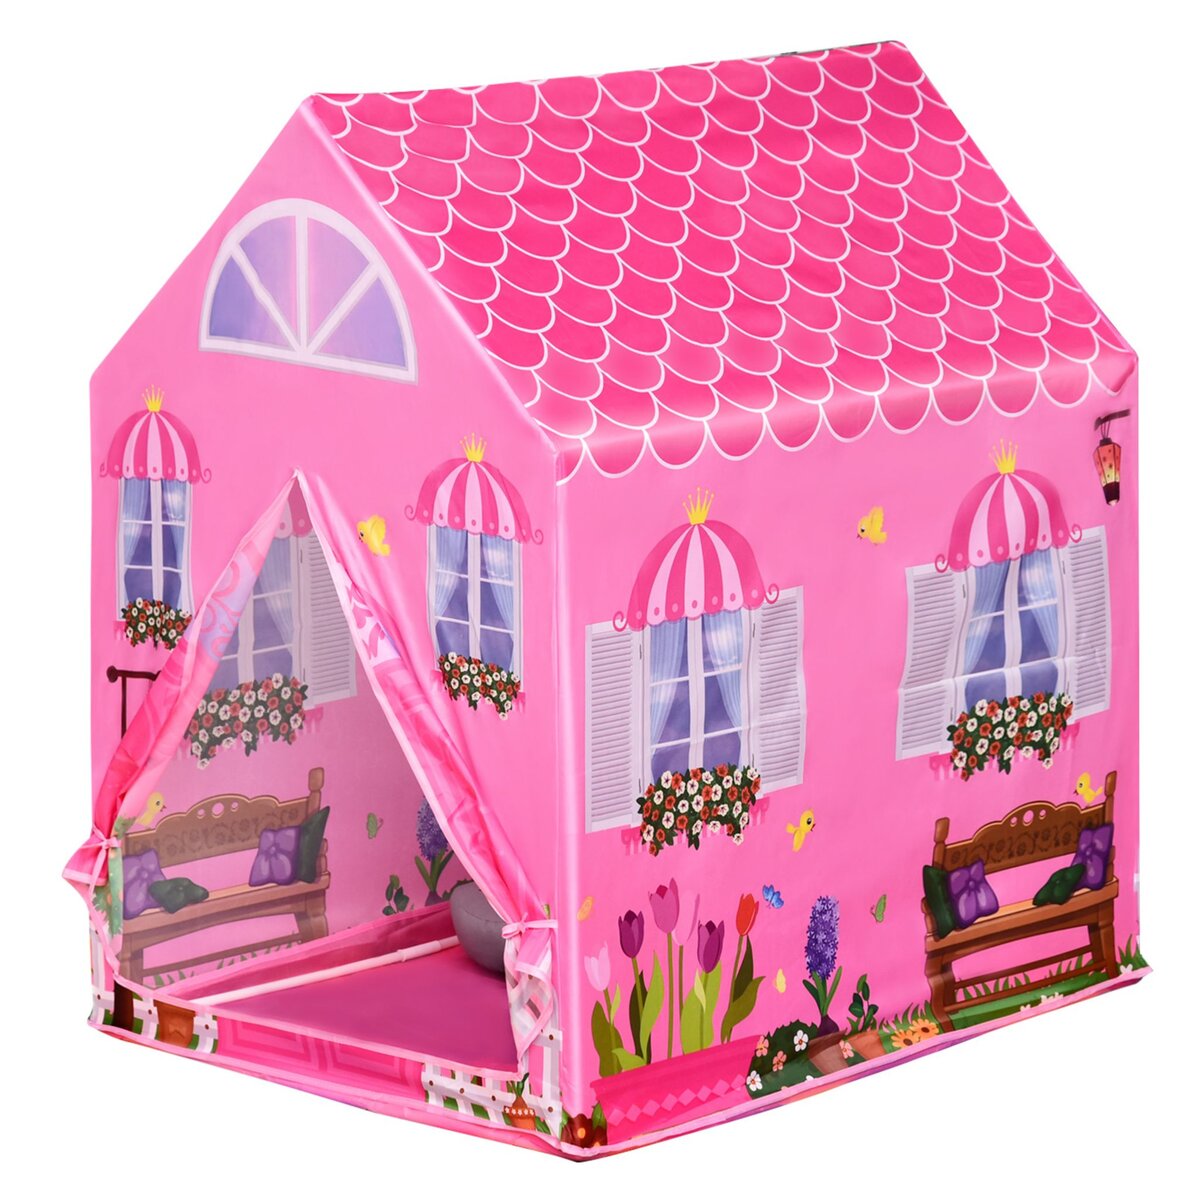 HOMCOM Tente enfant tente de jeu tente chateau de princesse dim. 93L x 69l x 103H cm 2 portes polyester rose